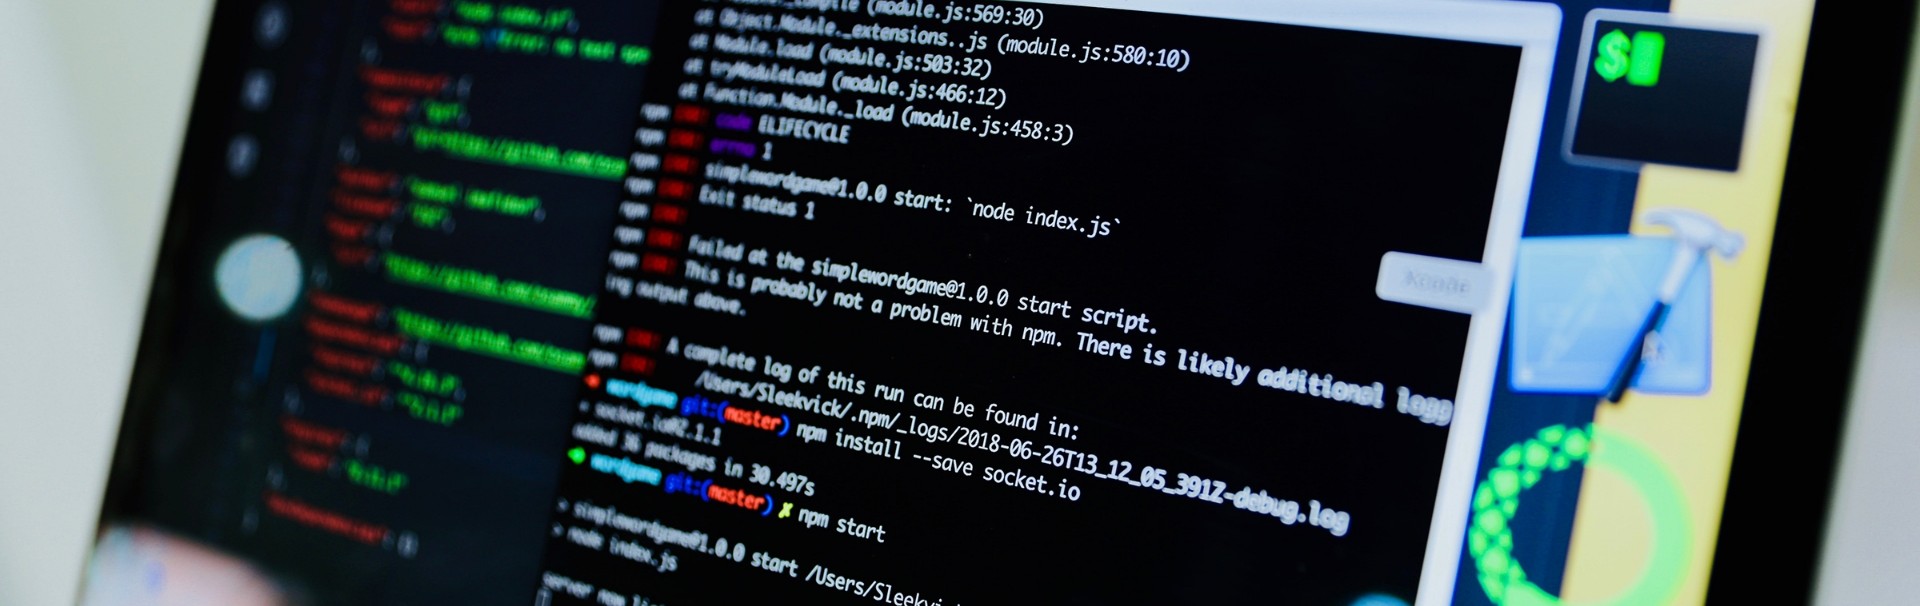 Blick von schräg rechts auf einen Computerbildschirm. In einem Fenster ist Programmcode in weißer Schrift auf schwarzem Hintergrund zu sehen. Manche Code-Elemente sind durch unterschiedliche Schriftfarben hervorgehoben.